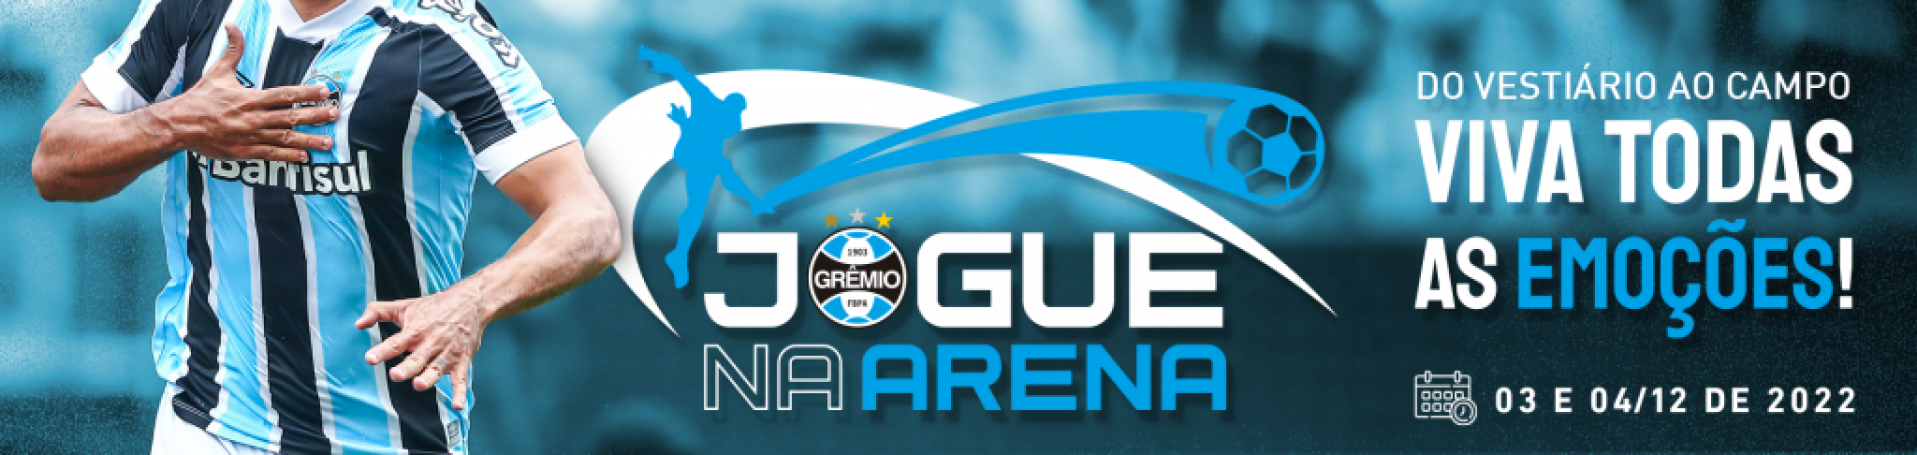 3408d_final_gremio_evento_jogue_na_arena_pagina_eventos